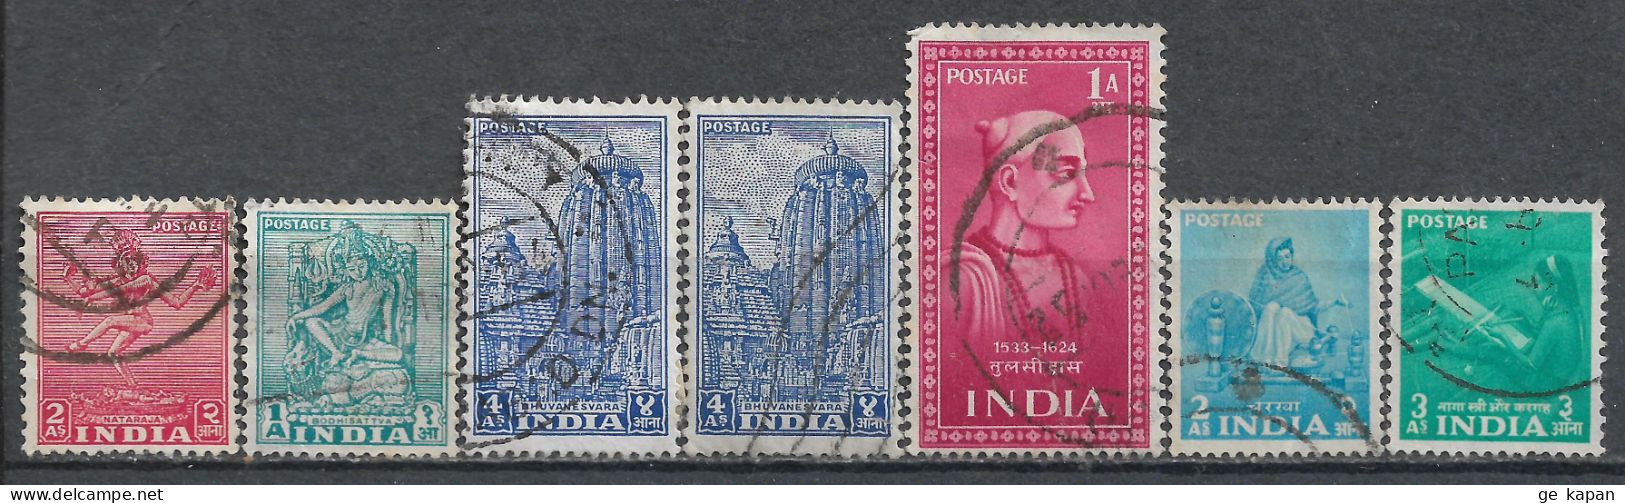 1949-1955 INDIA Set Of 7 Used Stamps (Michel # 195,215,217,222,242,243) - Gebruikt